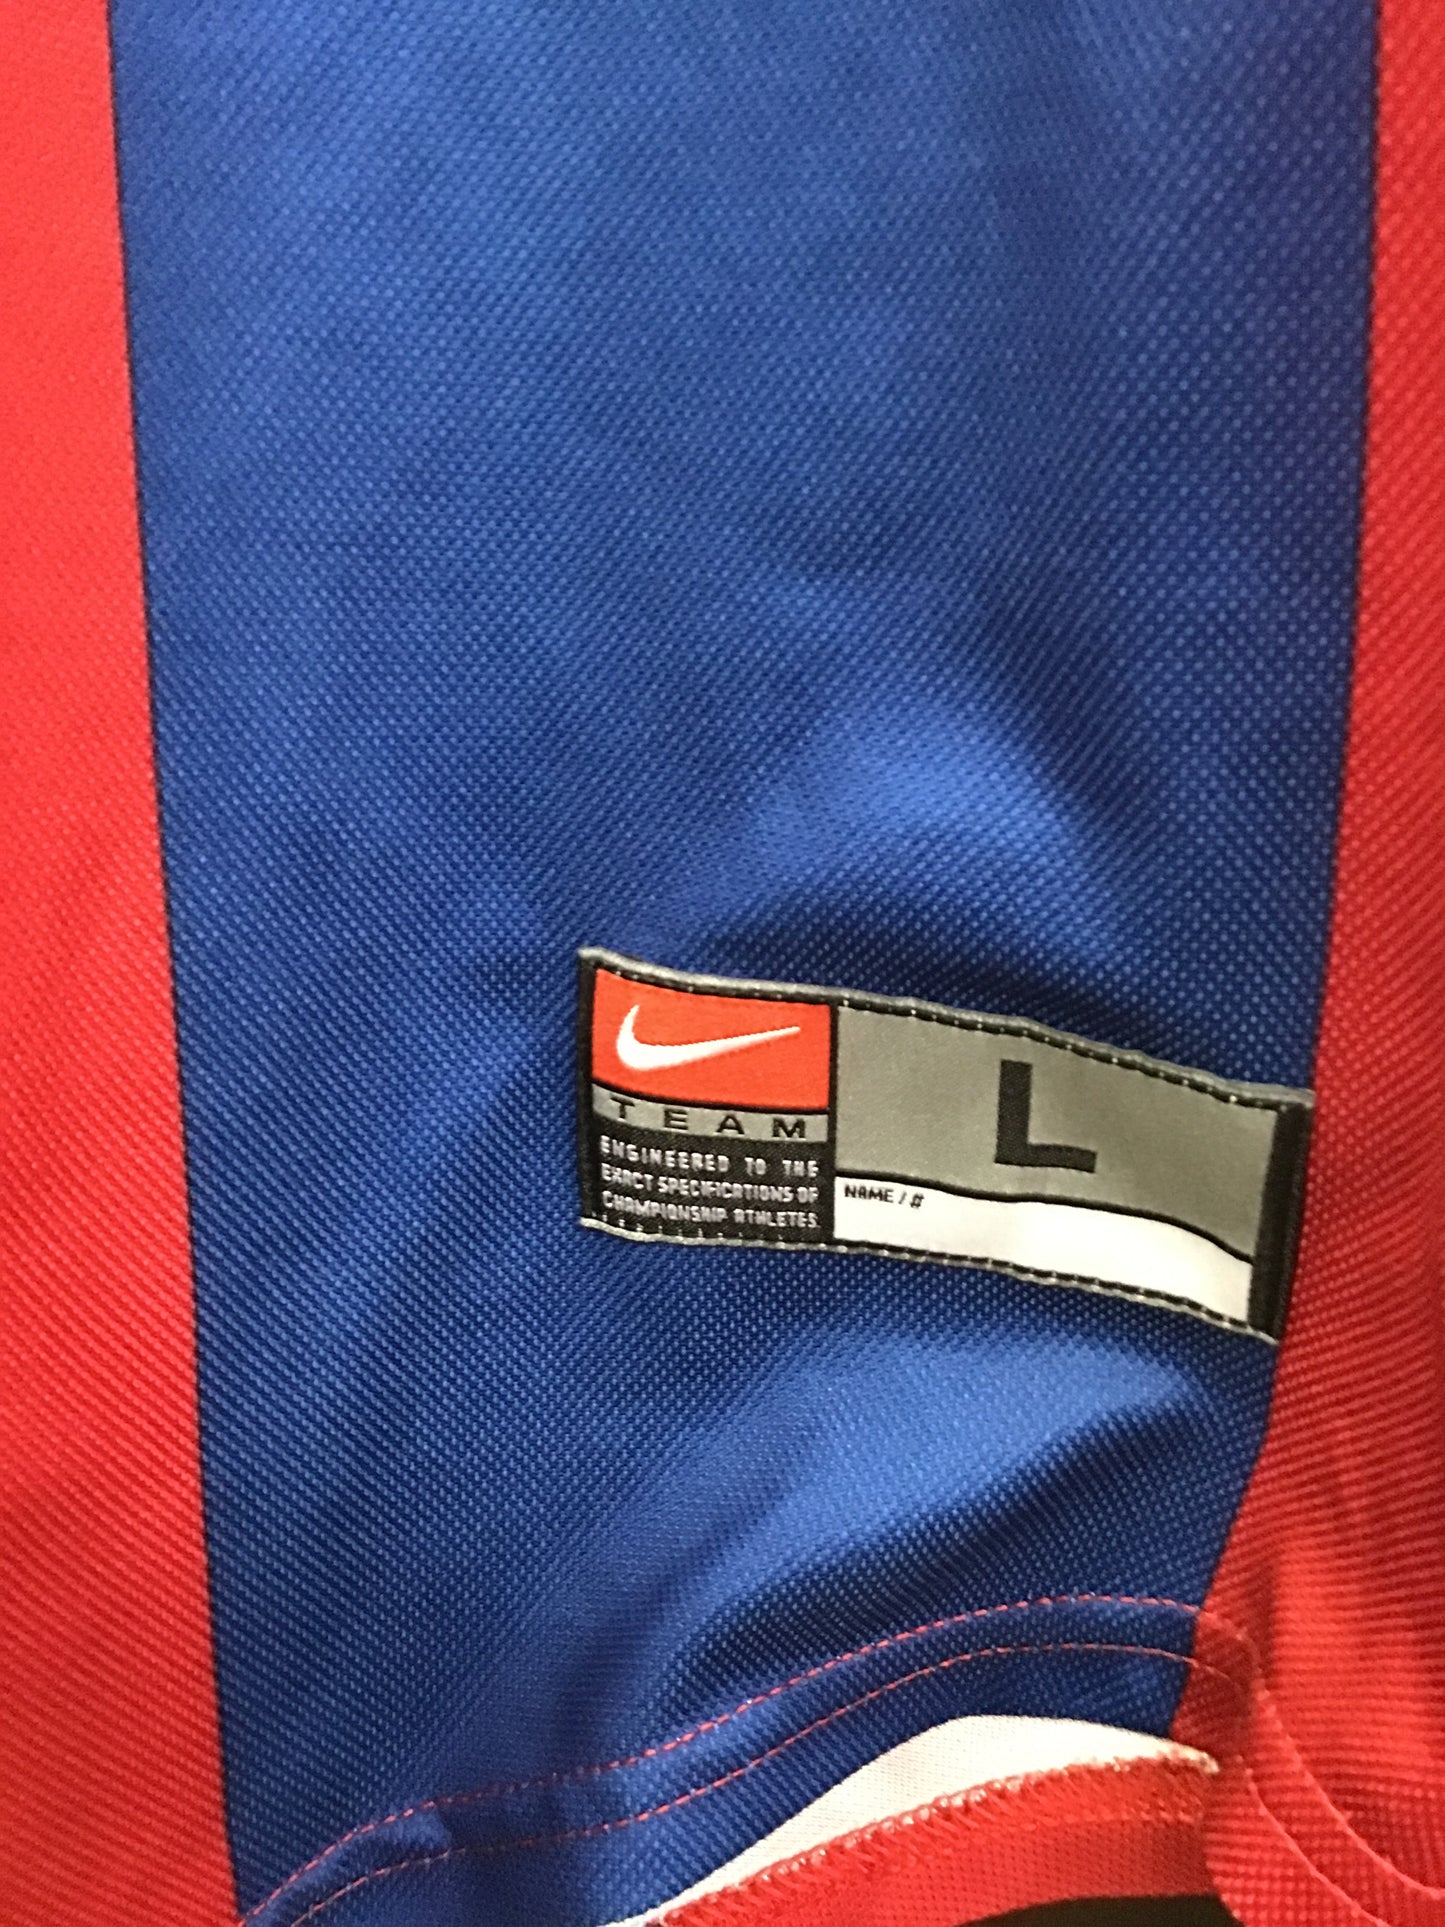 Nike FCB FC Barcelona Jersey, Size L